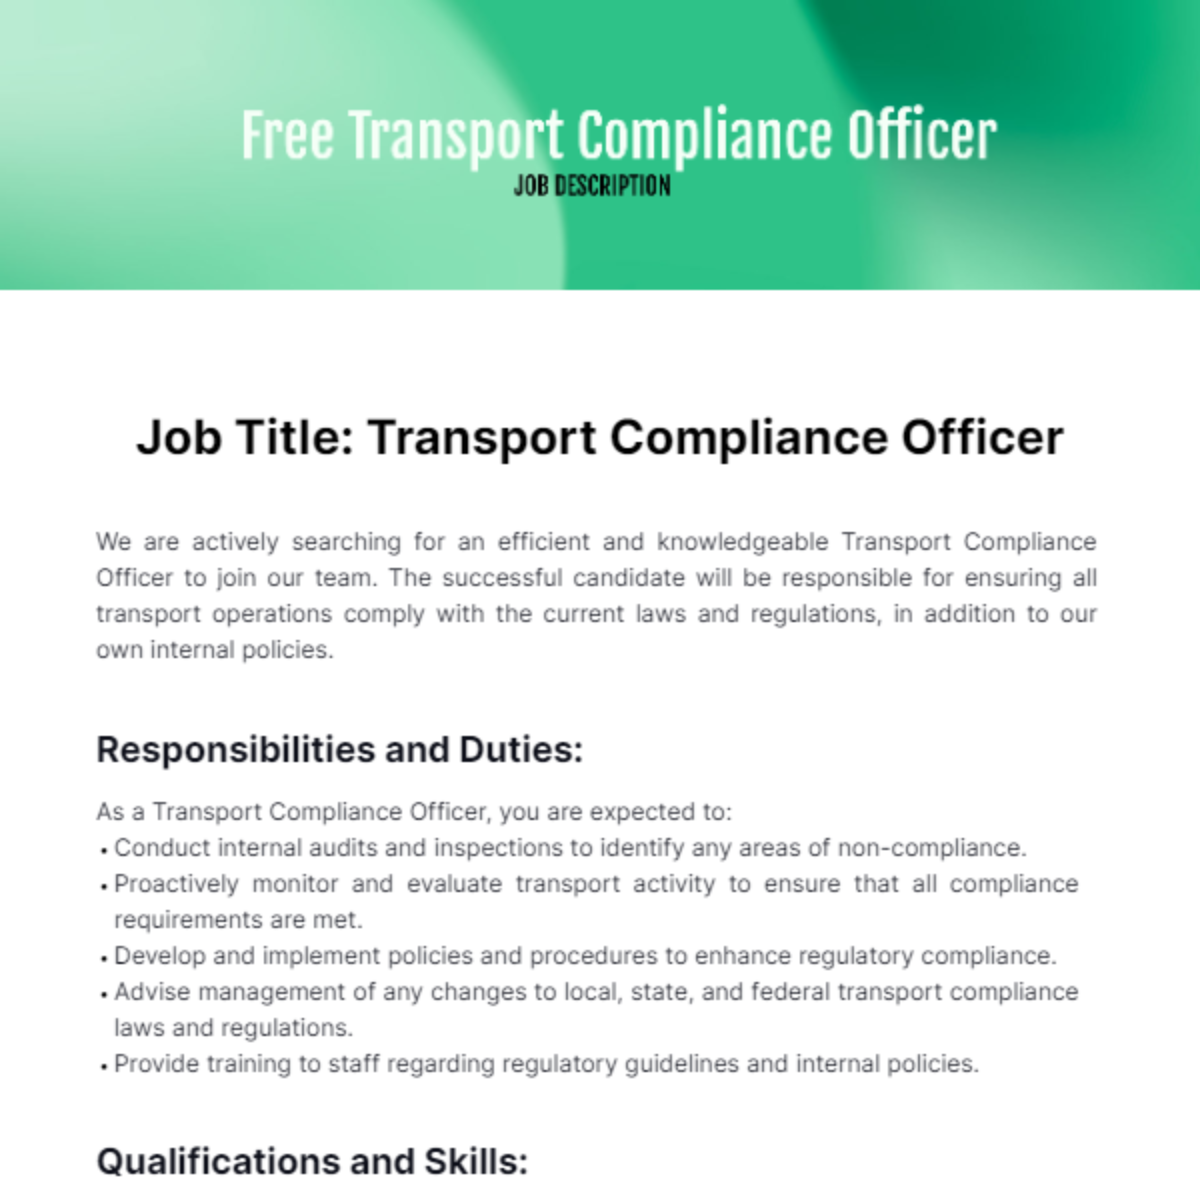 Transport Compliance Officer Job Description Template